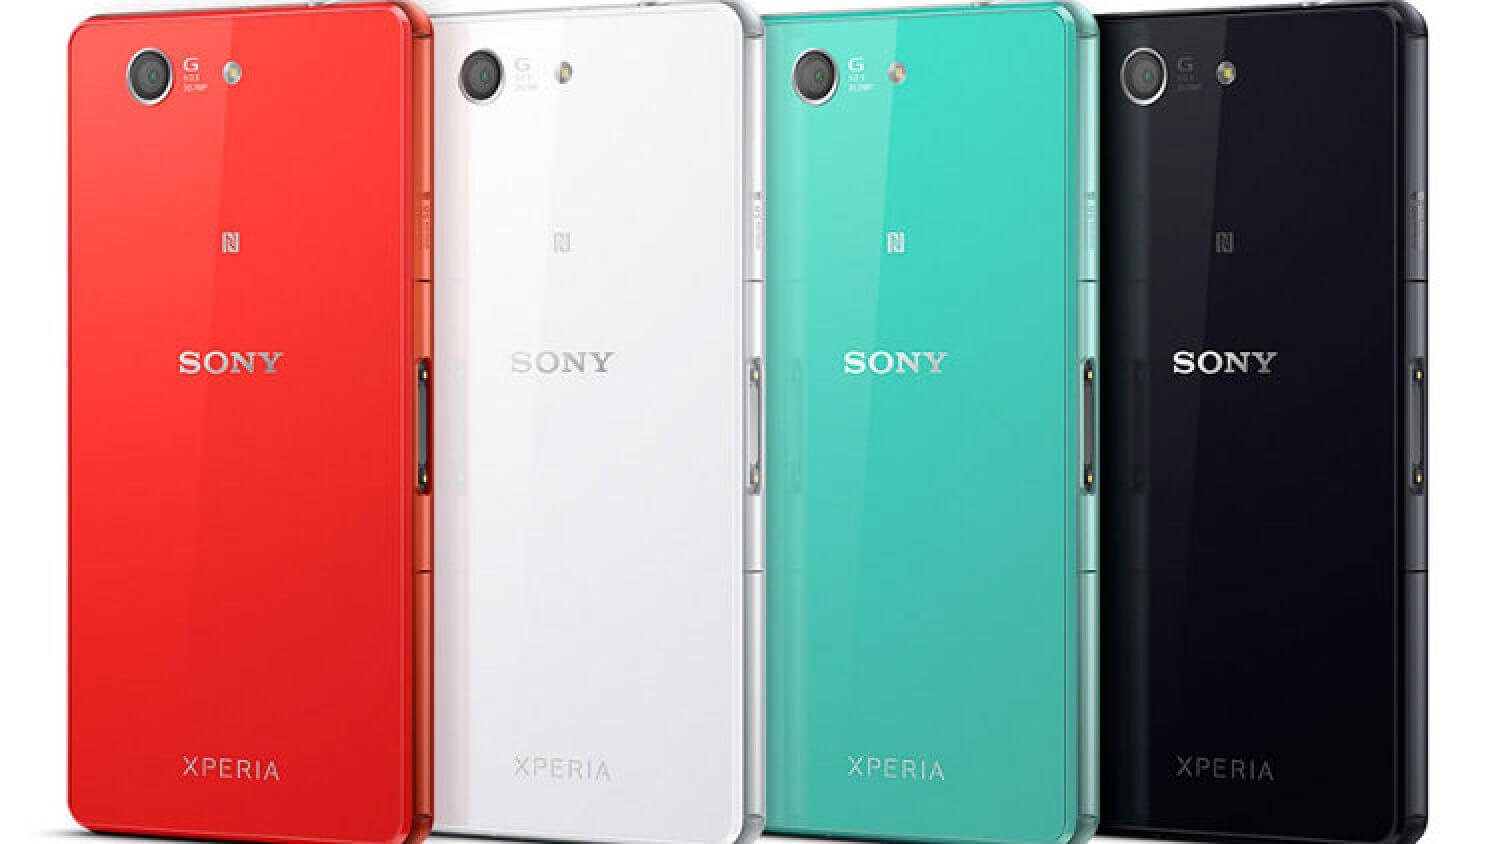 Sony Xperia Z3 и Z3 Compact. Яркие примеры качественной сборки смартфона. Фото.